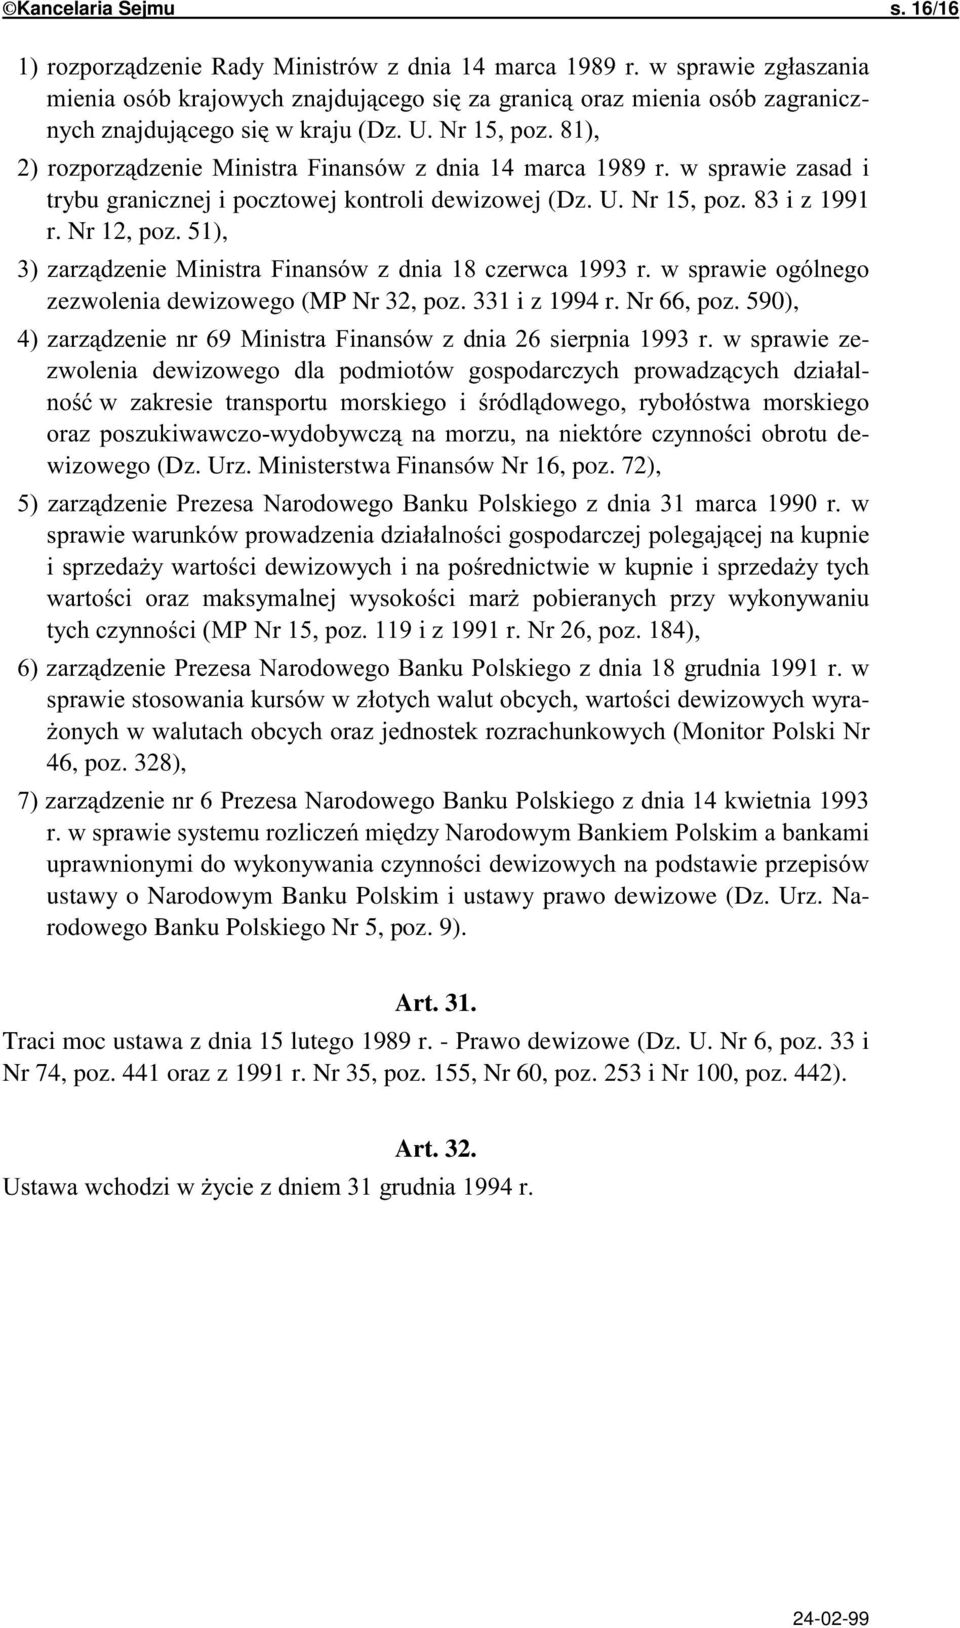 ' ;;+,4./* ;;; /&0 )-$ 0$./=.);; a-,4./ 46, poz. 328), 9$0./=.-;;' </=. ustawy o Narodowym Banku Polskim i ustawy prawo dewizowe (Dz. Urz.